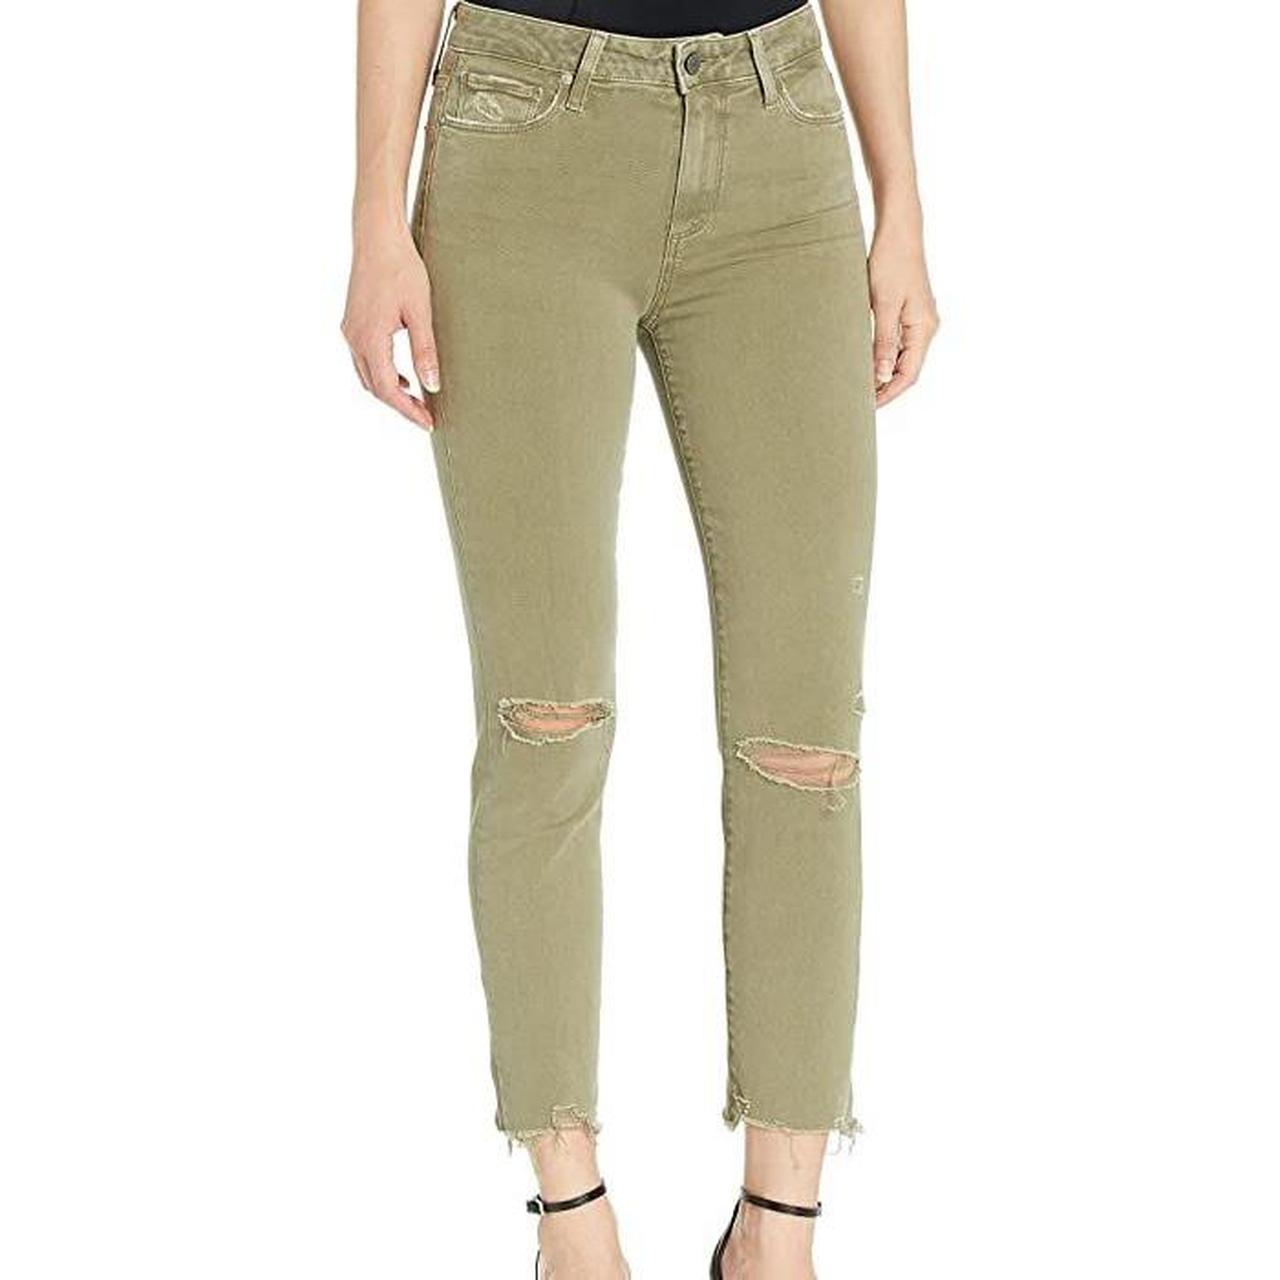 Hoxton Slim Crop Jeans by Paige Jeans. Size 24.... - Depop